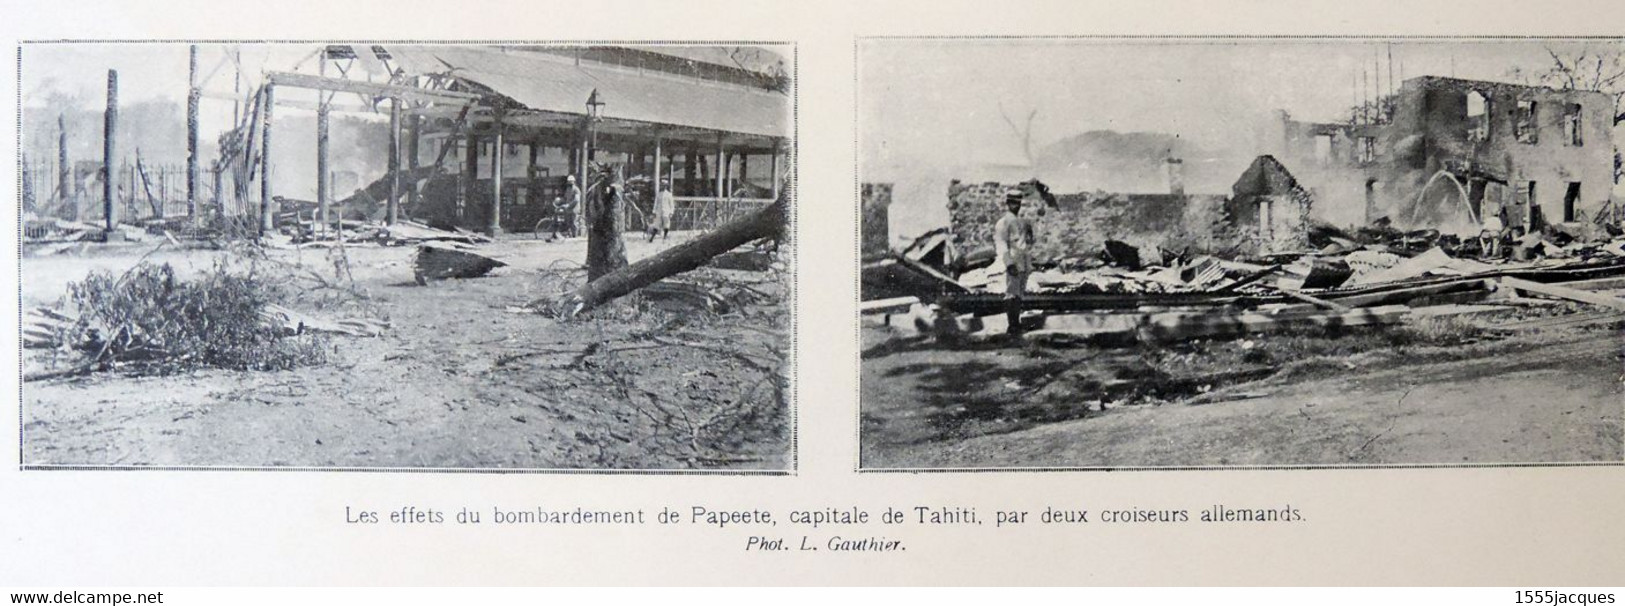 L'ILLUSTRATION N° 3739 31-10-1914 ANVERS BOMBARDEMENT ARRAS FUSILIERS YPRES BRIAND PAPEETE MONTENEGRO TRAIN BLINDÉ